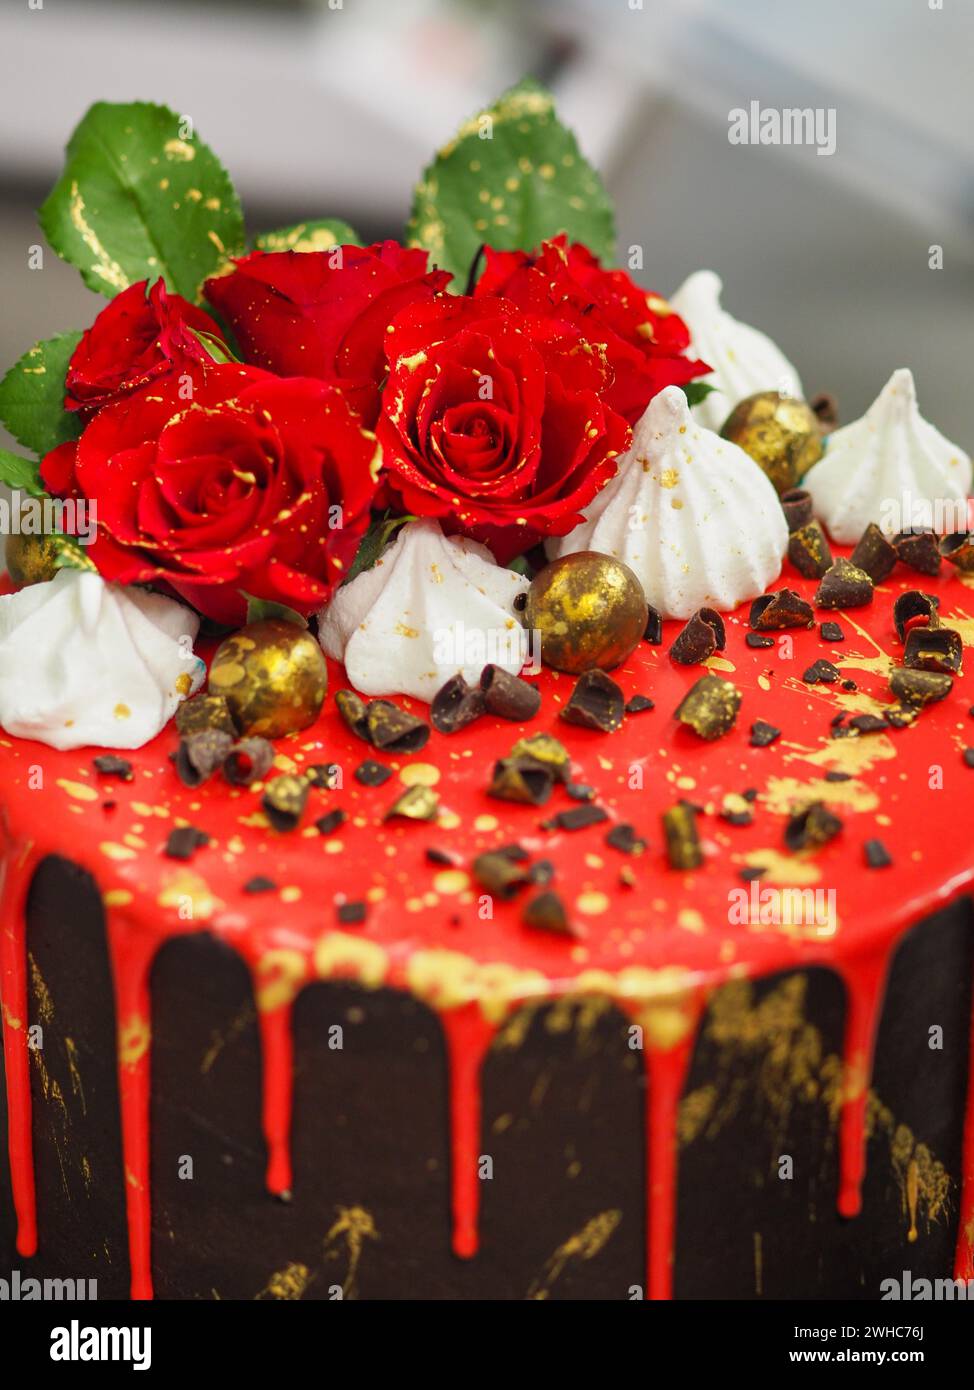 Dettagli laterali di una torta decorata con rose, glassa rossa sgocciolante e dolci al cioccolato Foto Stock